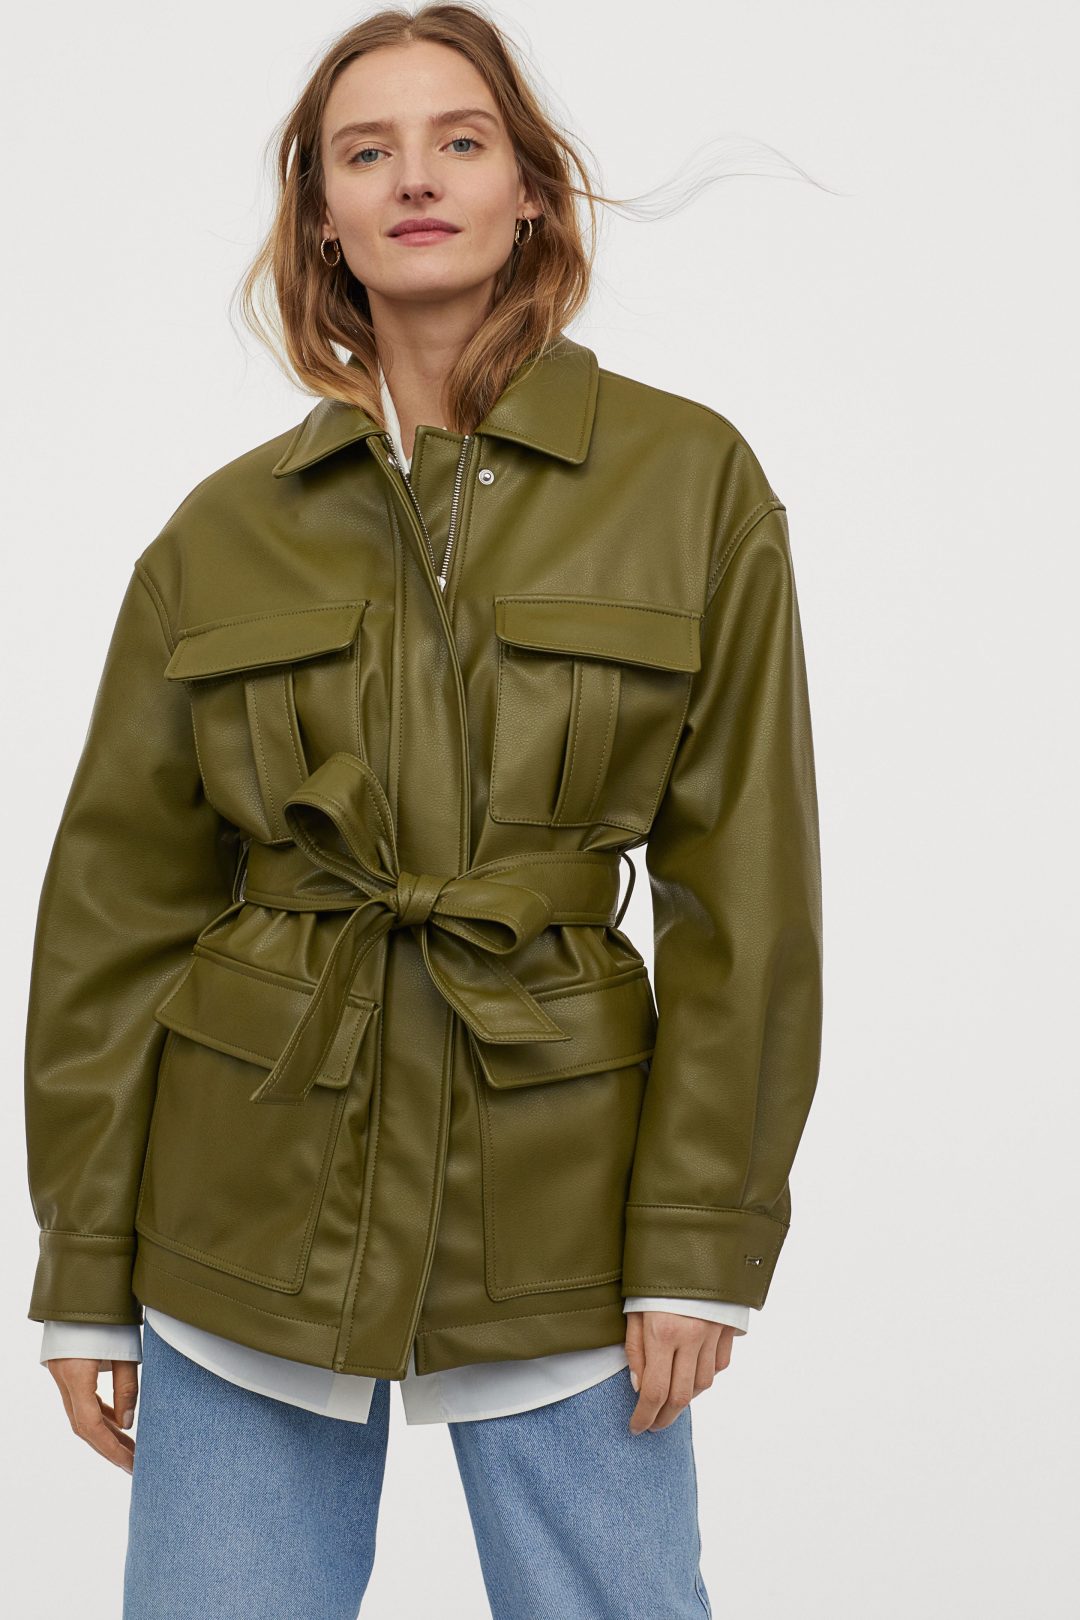 H&M kožna jakna proljeće 2020